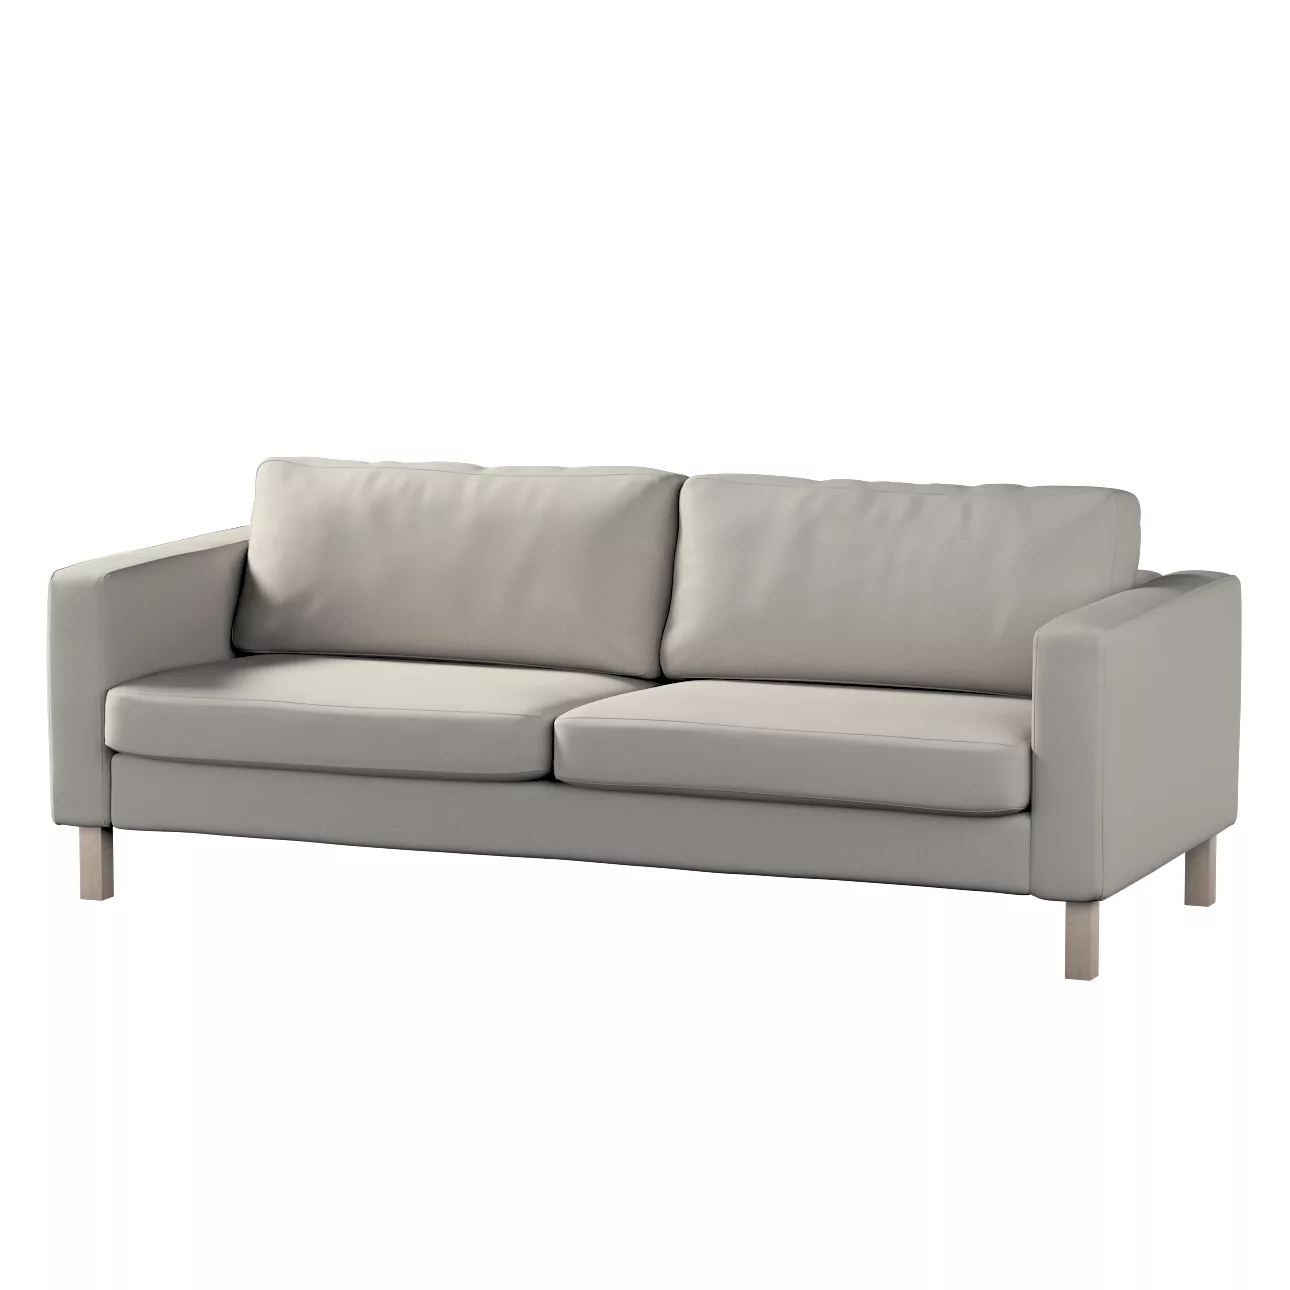 Bezug für Karlstad 3-Sitzer Sofa nicht ausklappbar, kurz, grau, Bezug für K günstig online kaufen